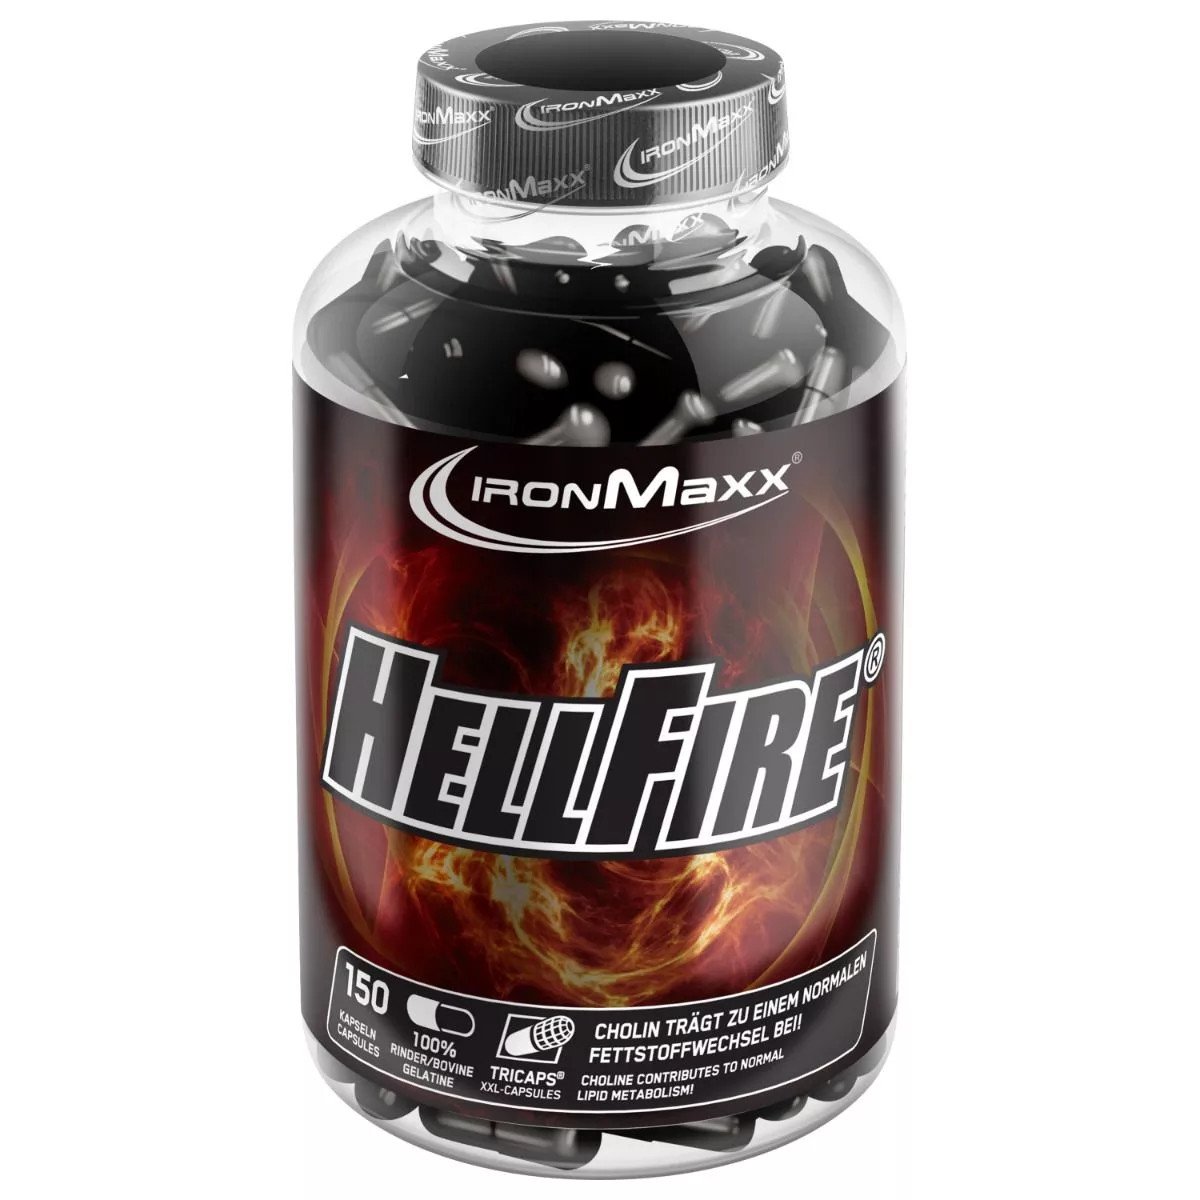 Жиросжигатель IronMaxx Hellfire Fatburner, 150 капсул,  мл, IronMaxx. Жиросжигатель. Снижение веса Сжигание жира 